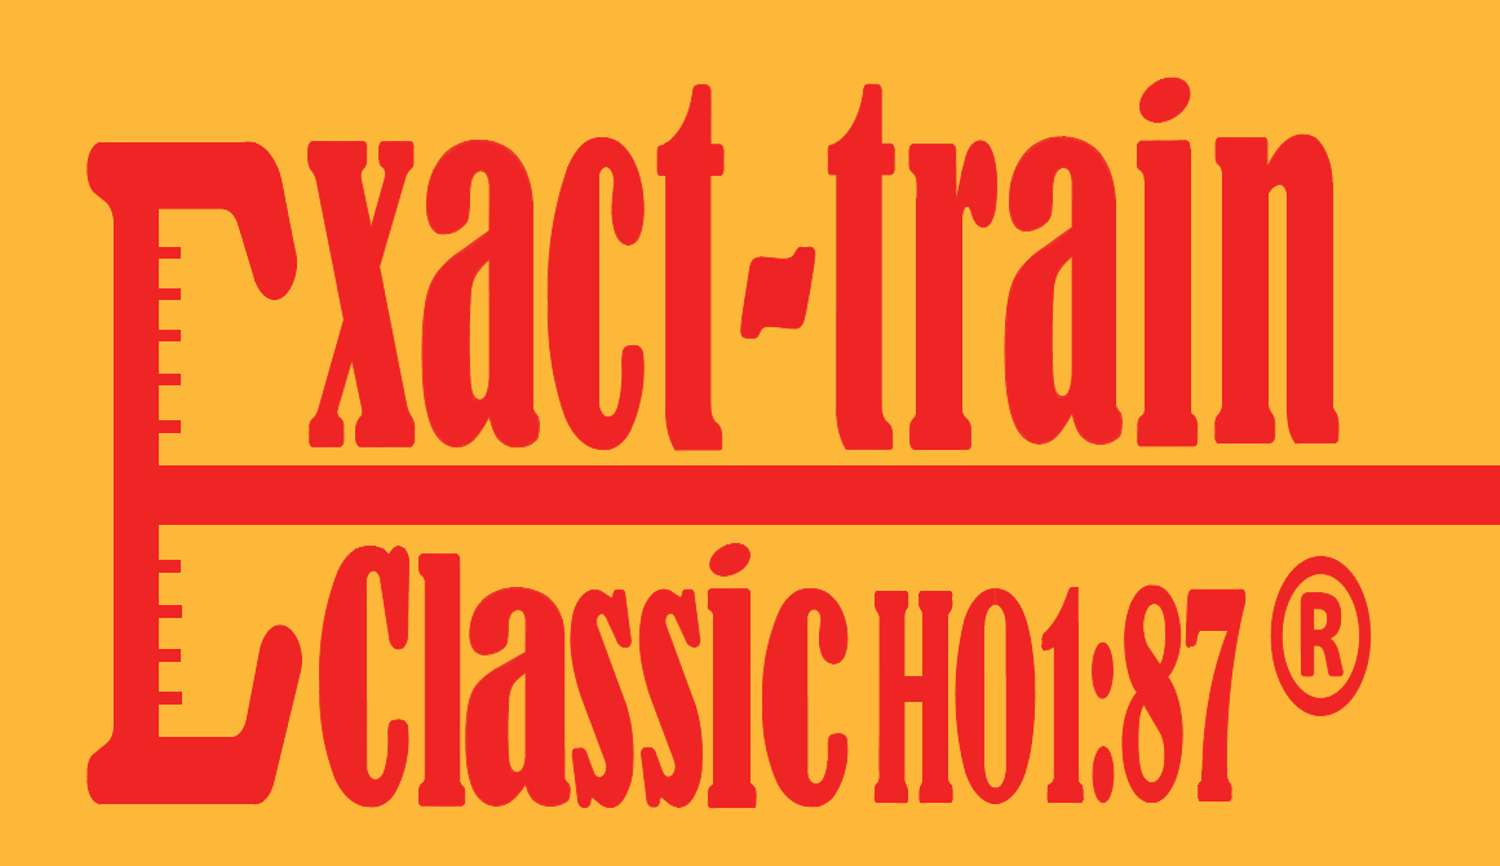 Exact-Train EX20993 - Gedeckter Güterwagen Gs1210, DR, Ep.IV